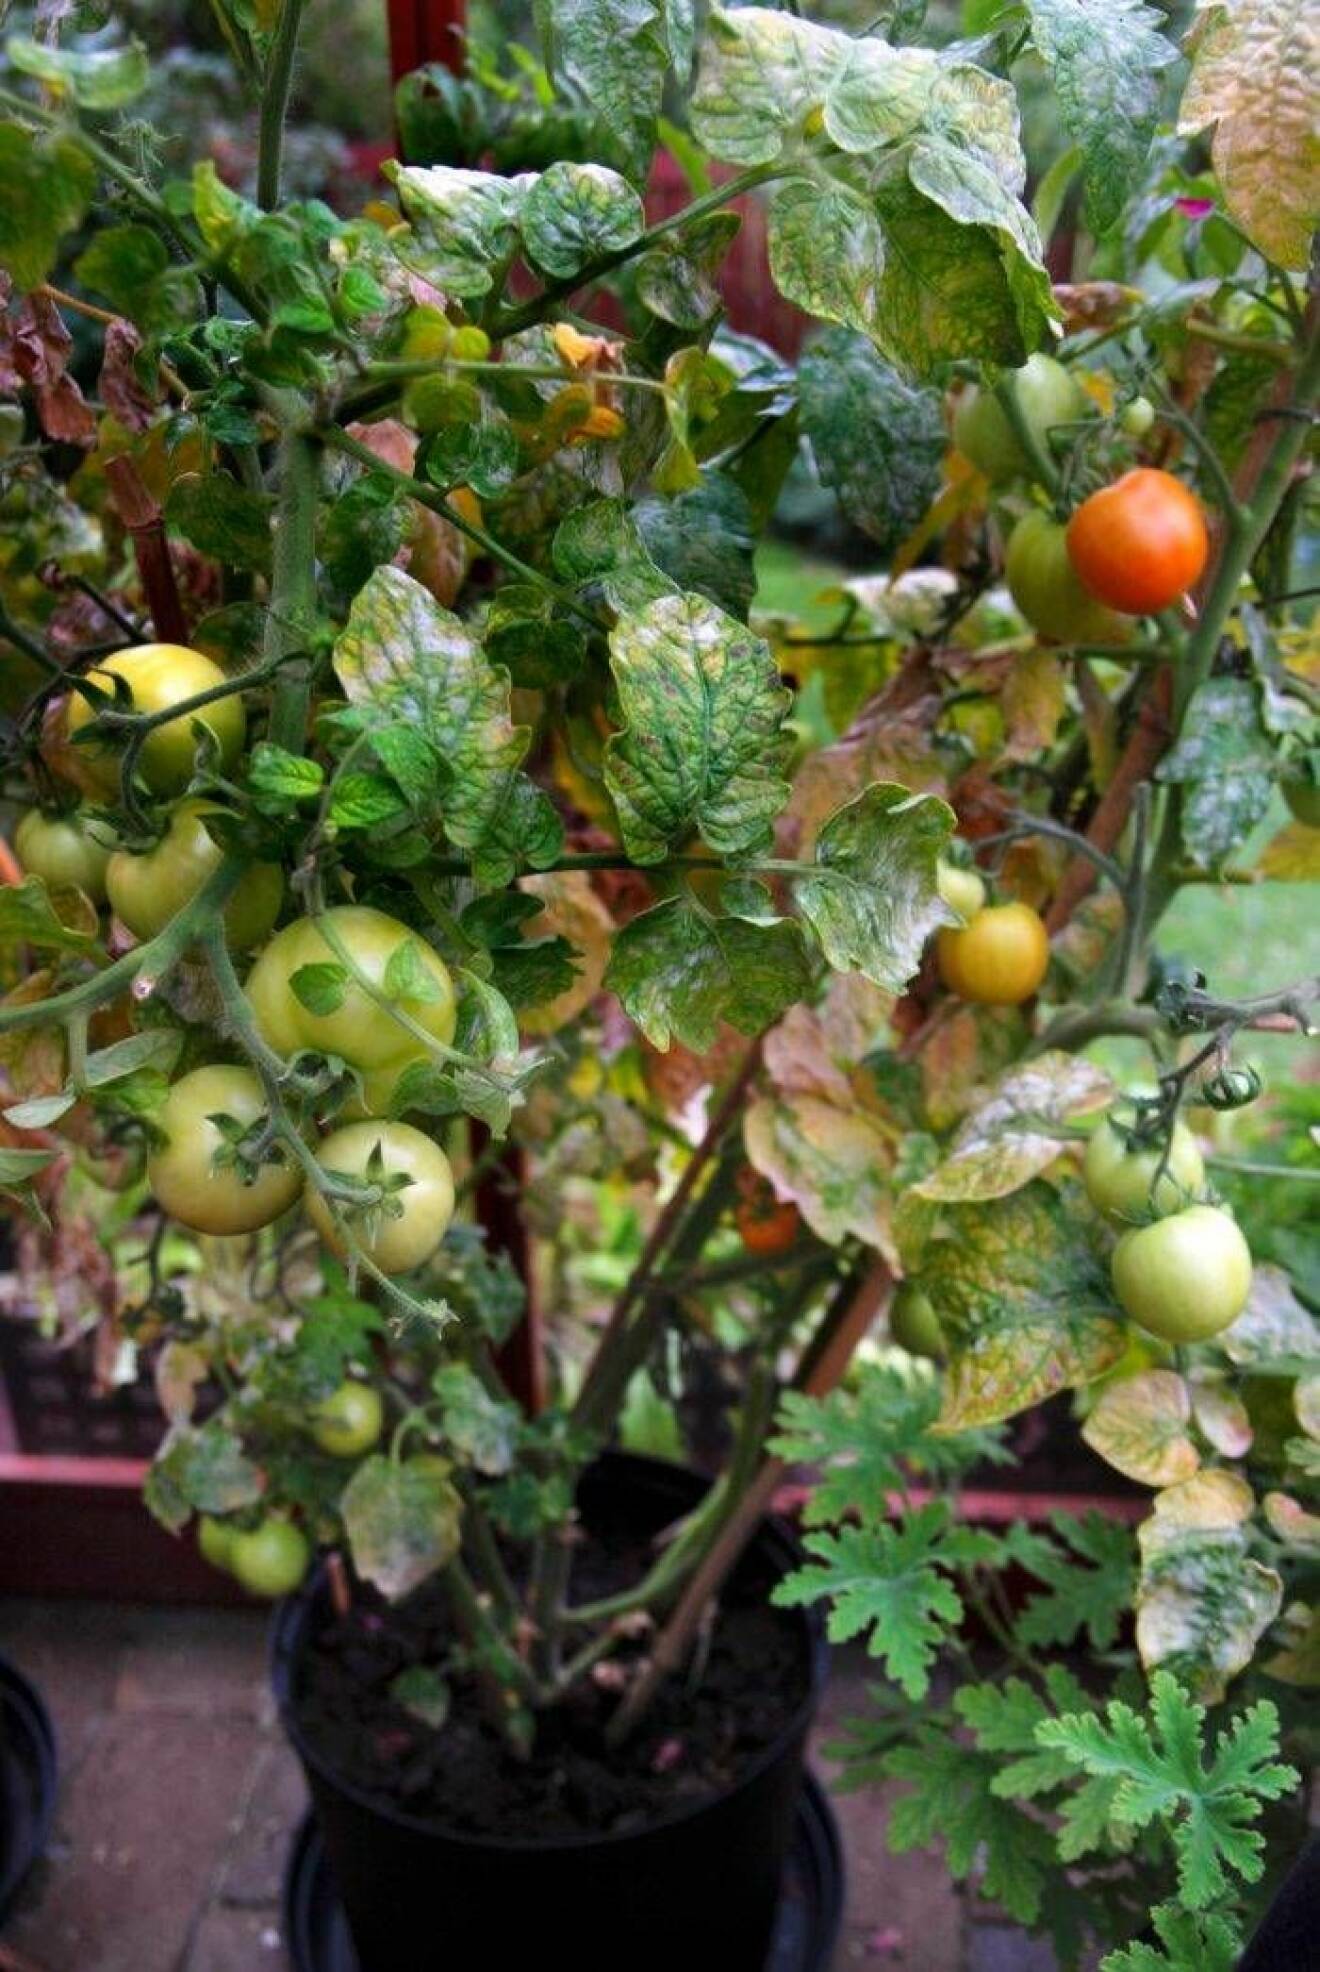 Gråmögel är vanlig på många växter, inte minst på tomater i växthus. Det kan behandlas med produkten Binab, baserat på nyttosvampar.